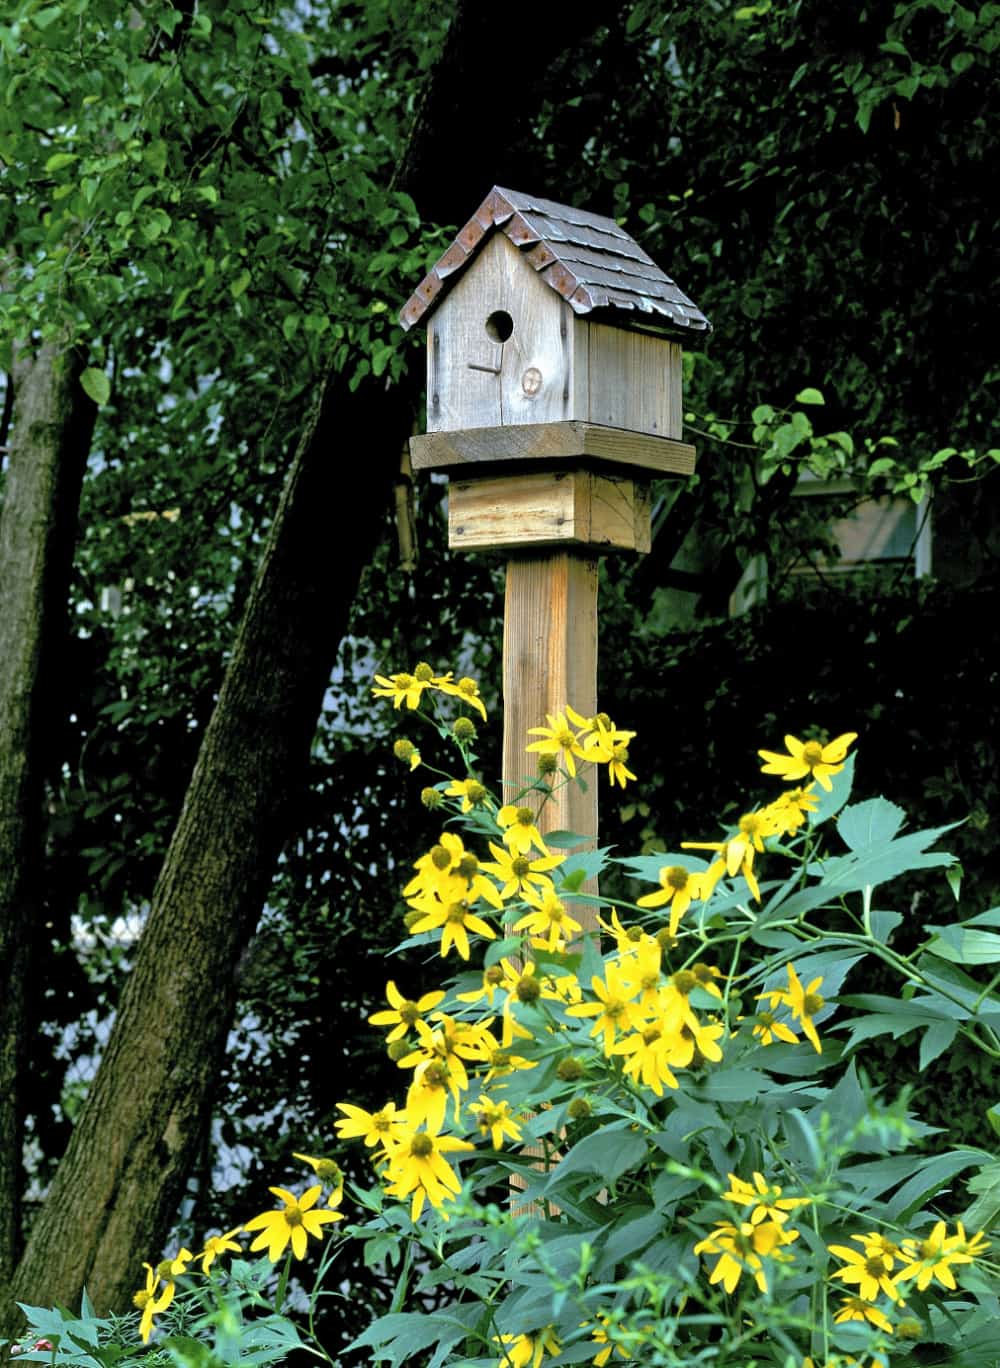 Birdhouse in a flower garden.